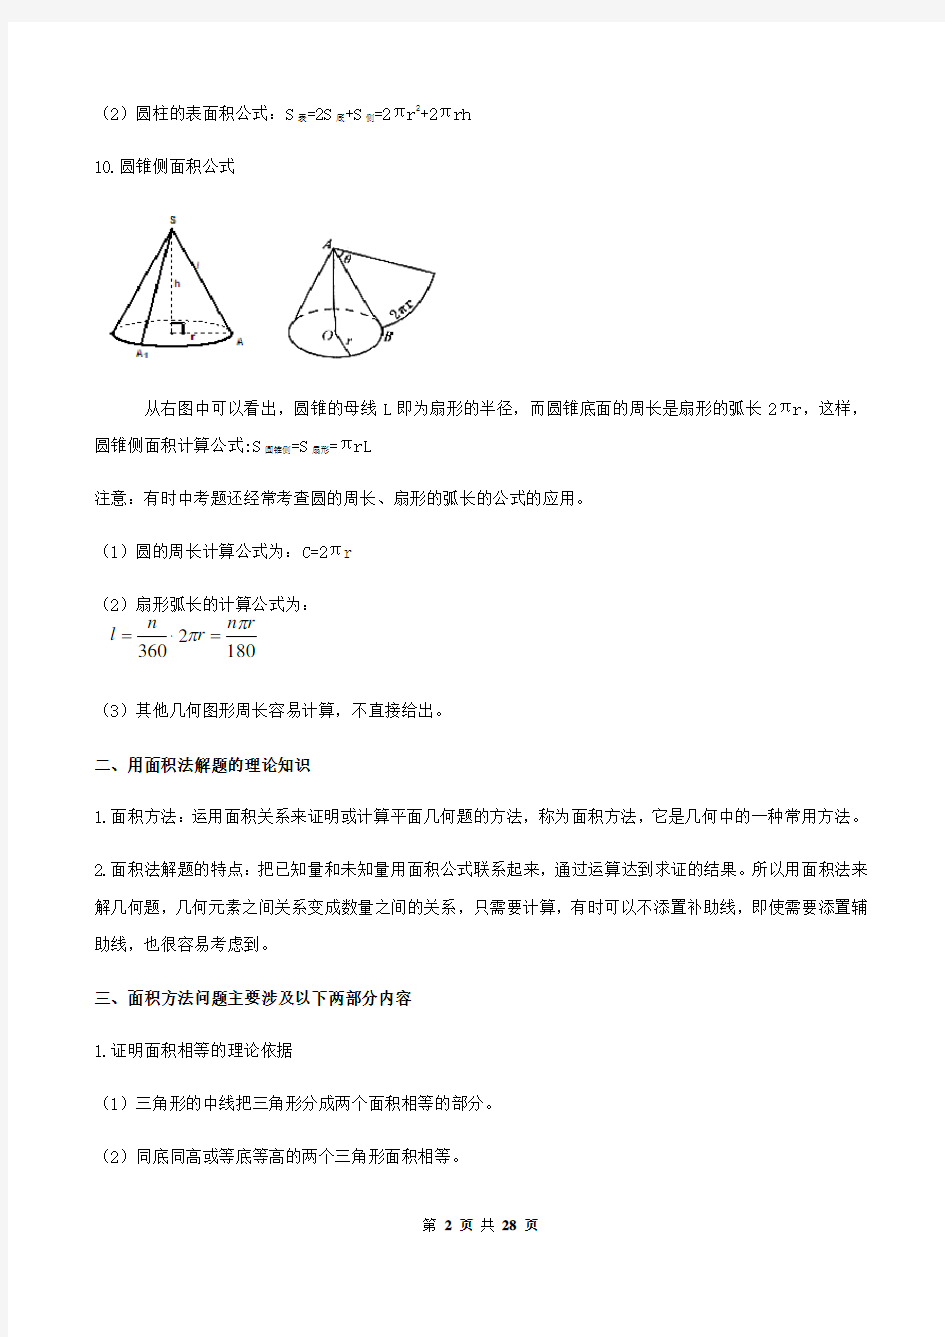 专题28 求几何图形面积及面积法解题的问题(解析版)